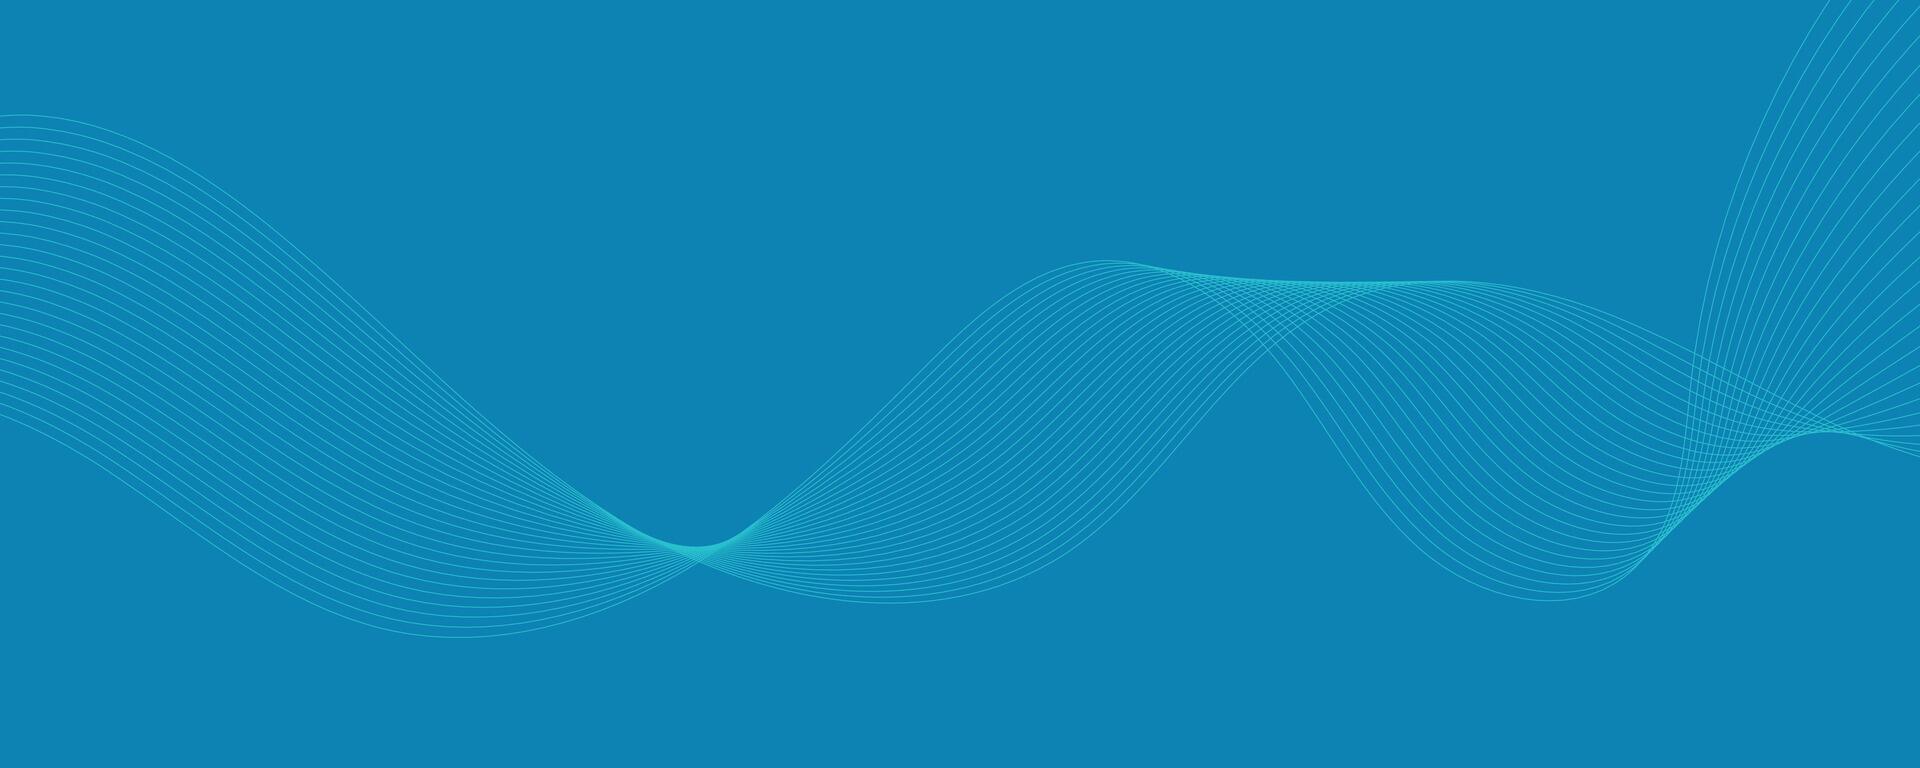 abstrakter blauer Hintergrund mit Wellen vektor